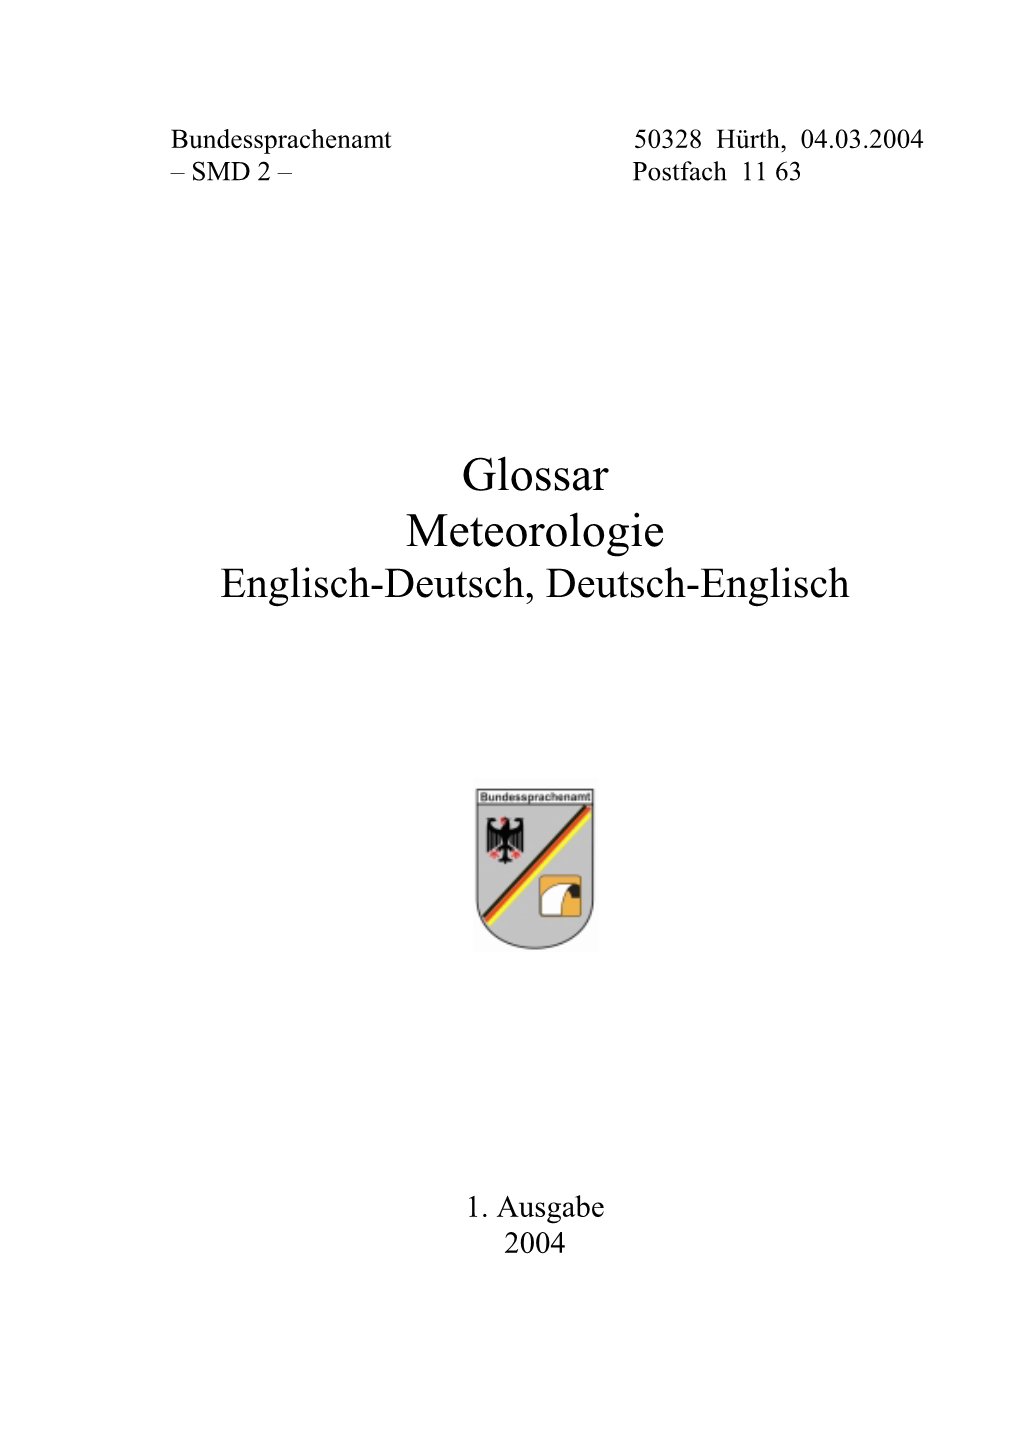 Glossar Meteorologie Englisch-Deutsch, Deutsch-Englisch